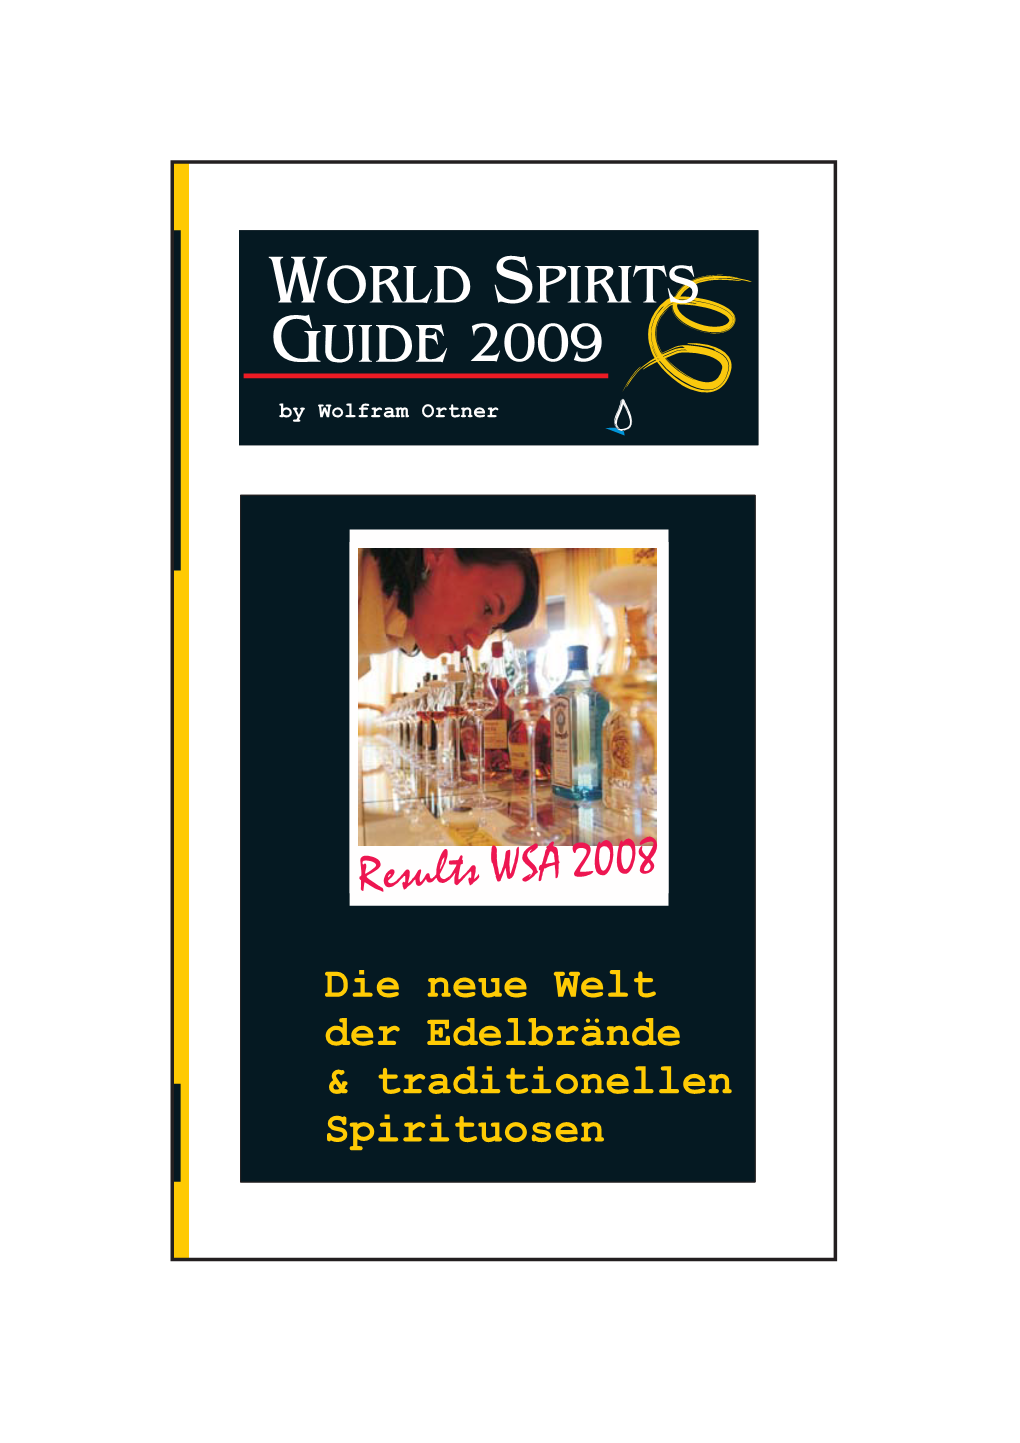 WORLD SPIRITS GUIDE 2002009 by Wolfram Ortner